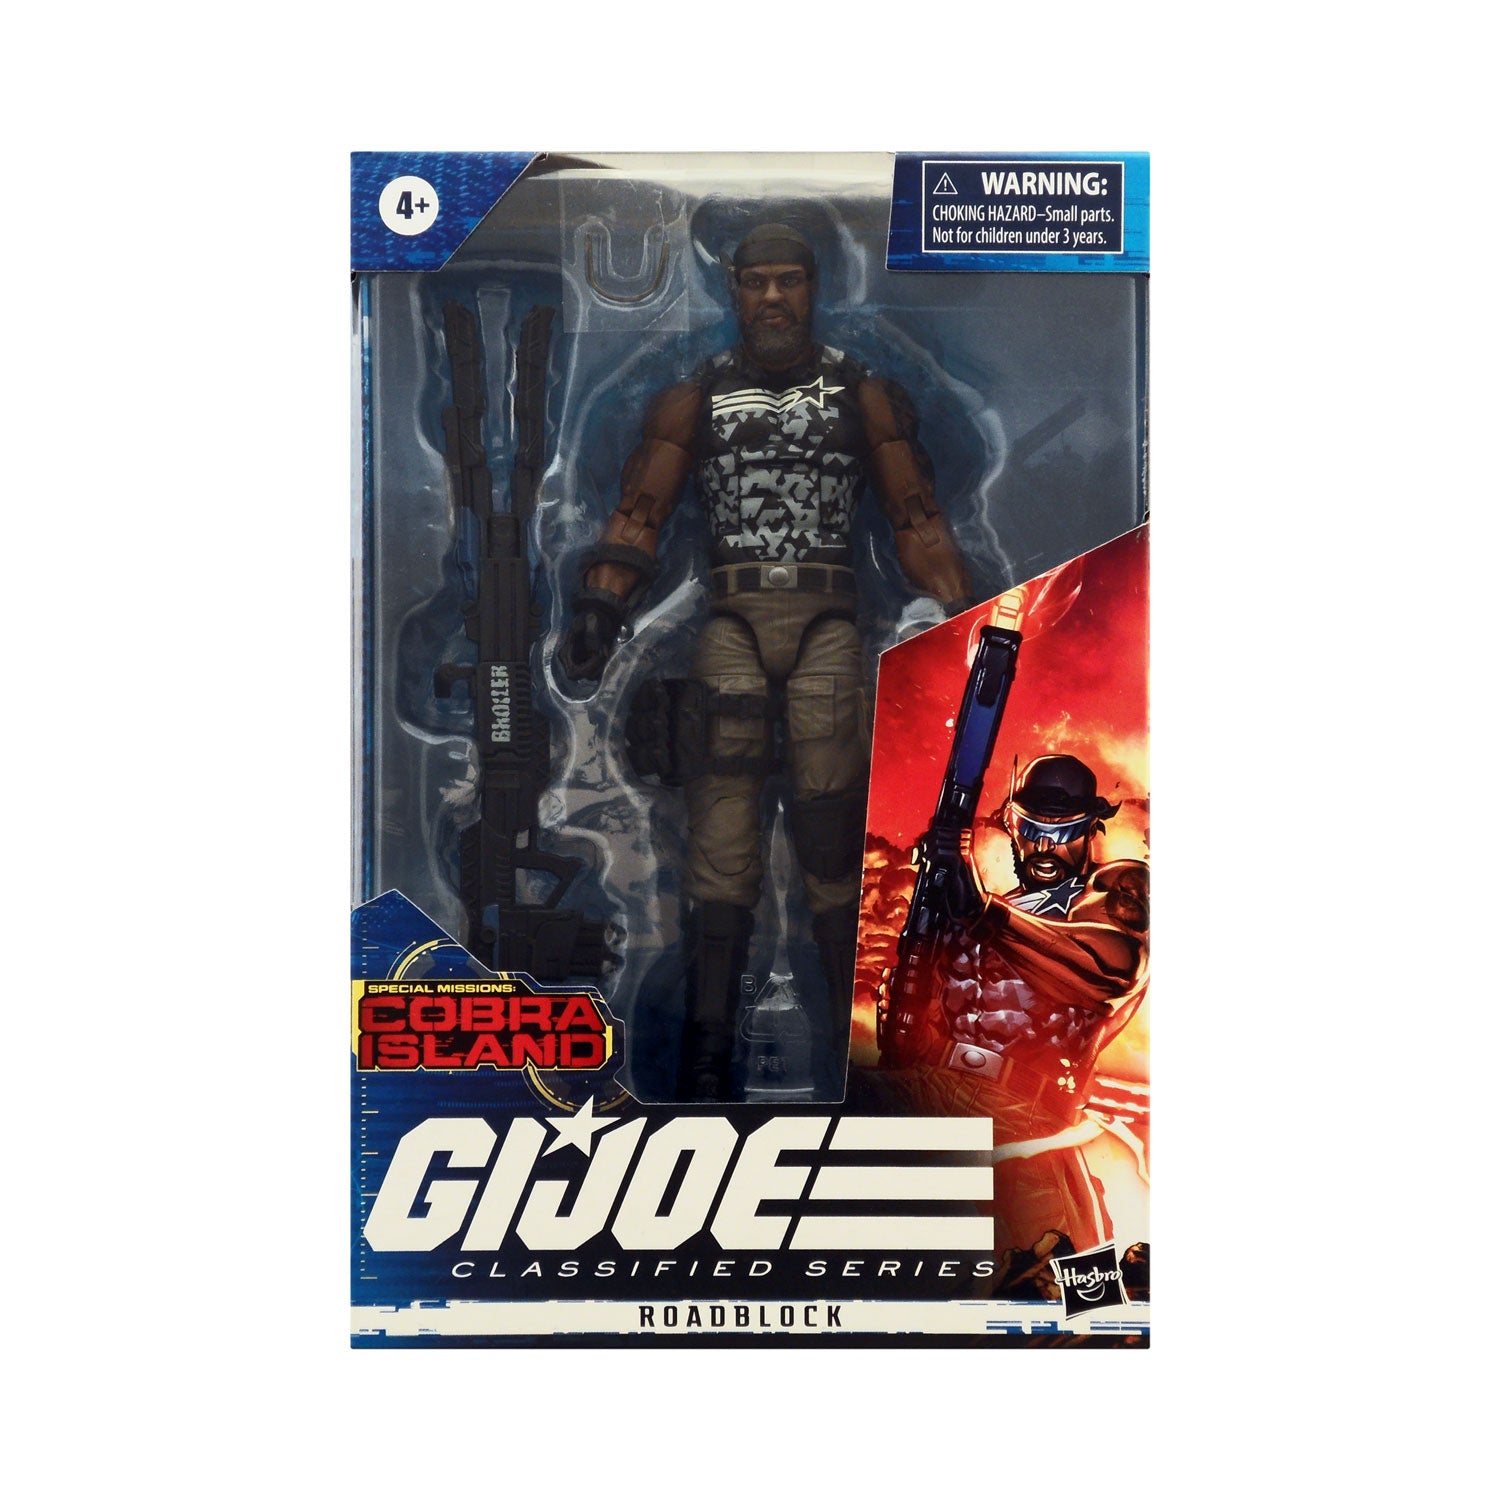 G.I. Joe Classified Series Special Missions: Cobra Island